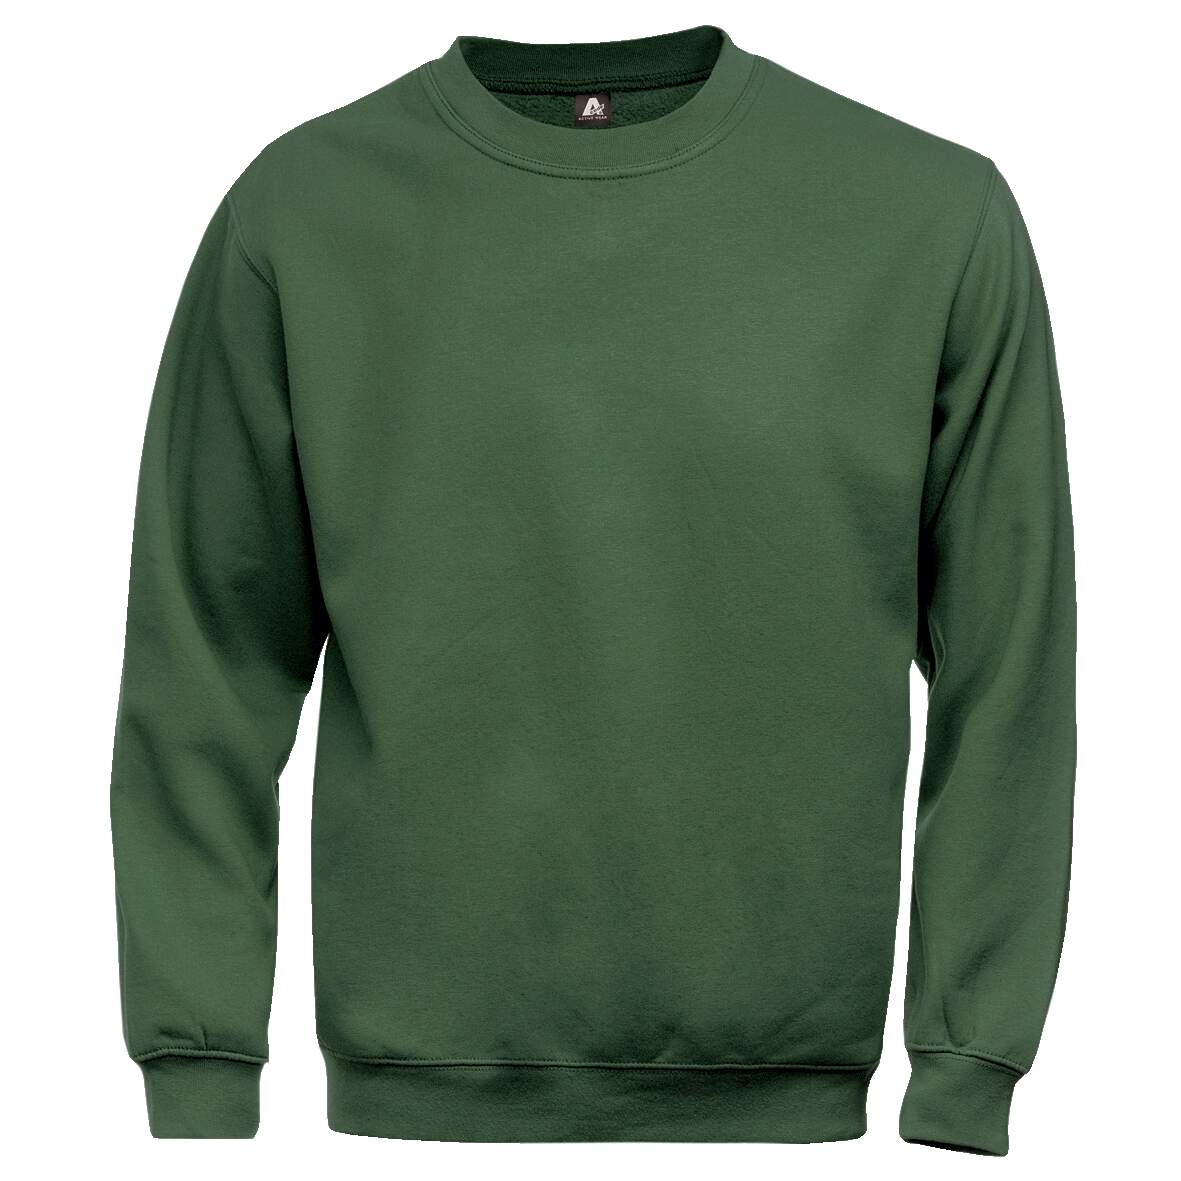 1181258 - Sweatshirt grün 100225